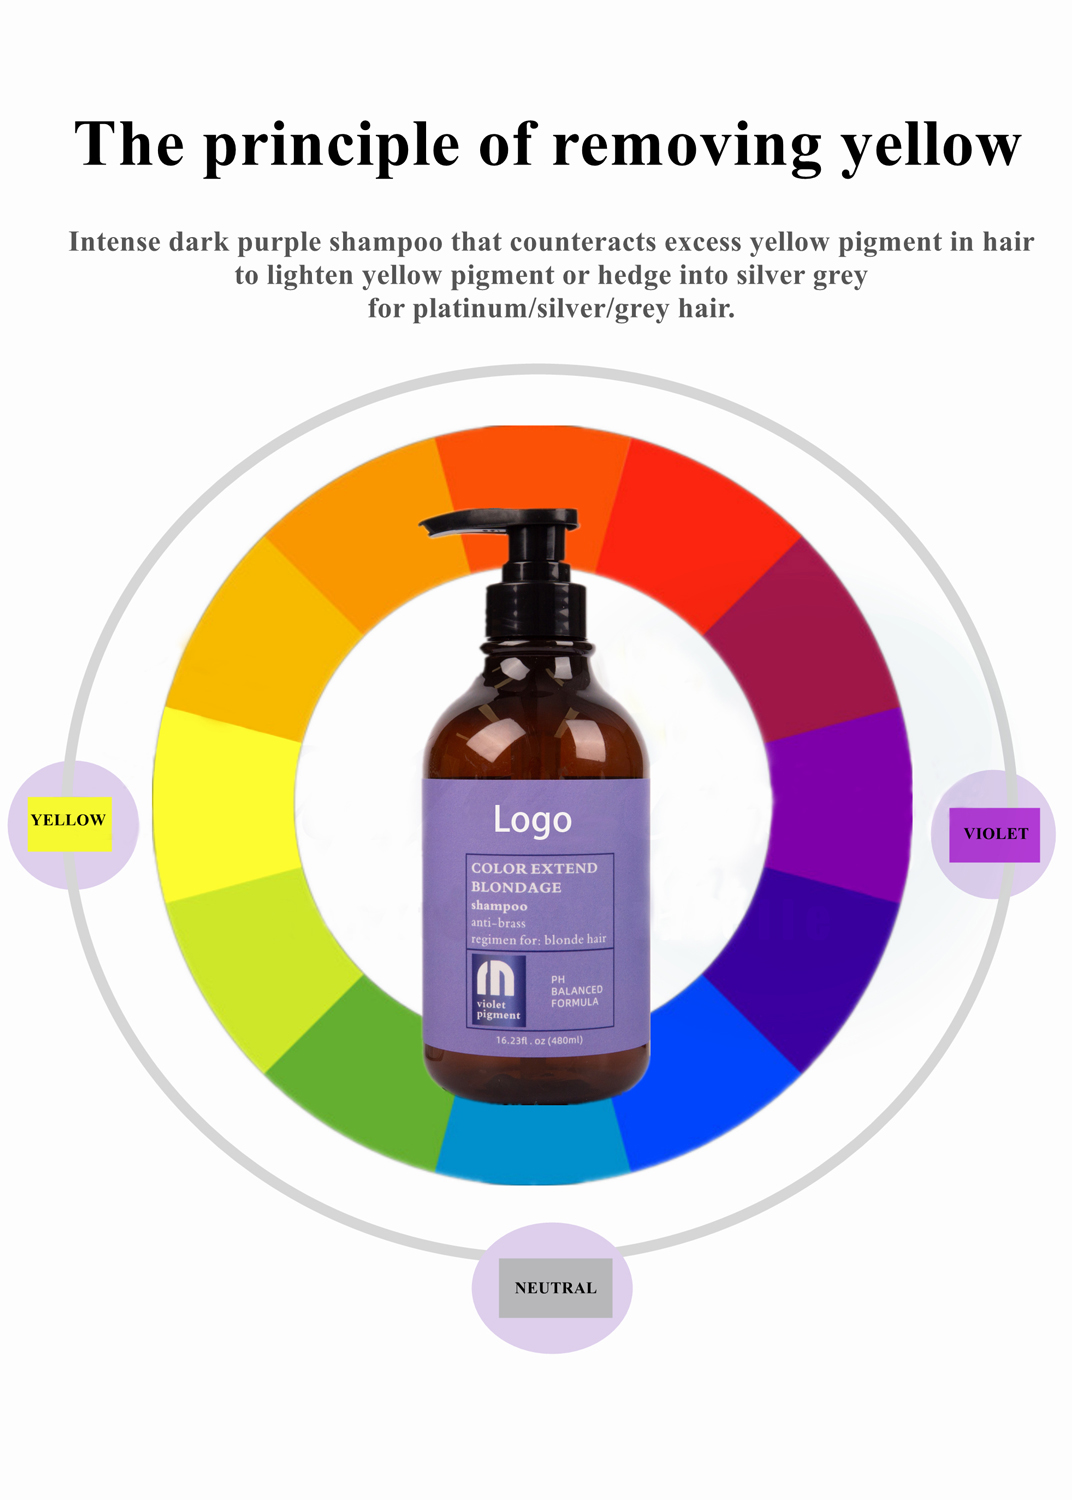 Anti-yellow moisturizing shampoo